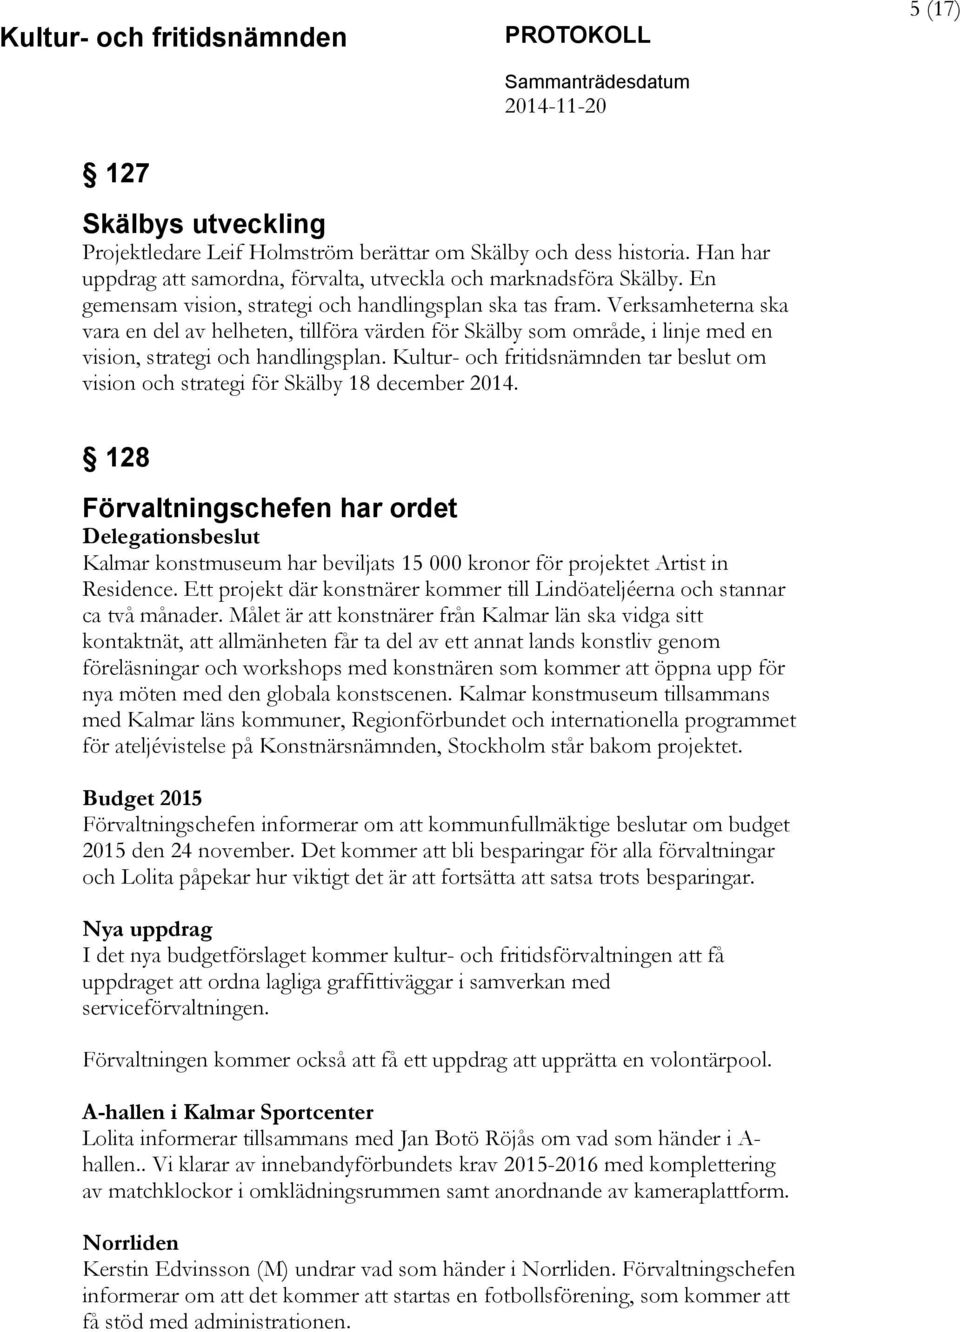 Kultur- och fritidsnämnden tar beslut om vision och strategi för Skälby 18 december 2014.